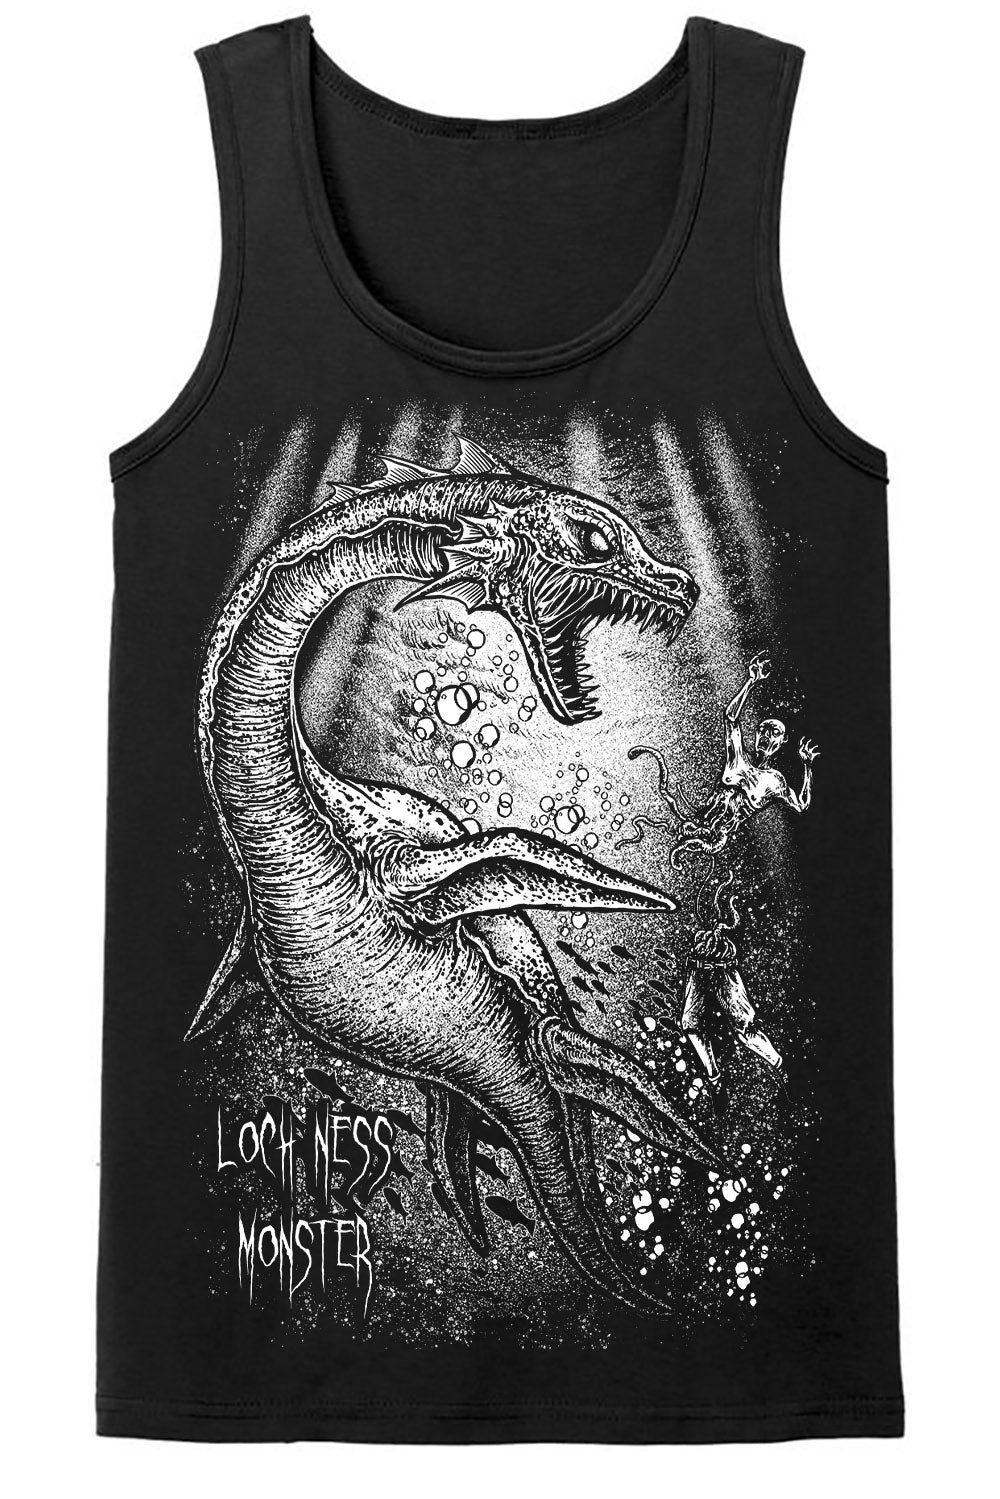 Loch Ness Monster T-shirt